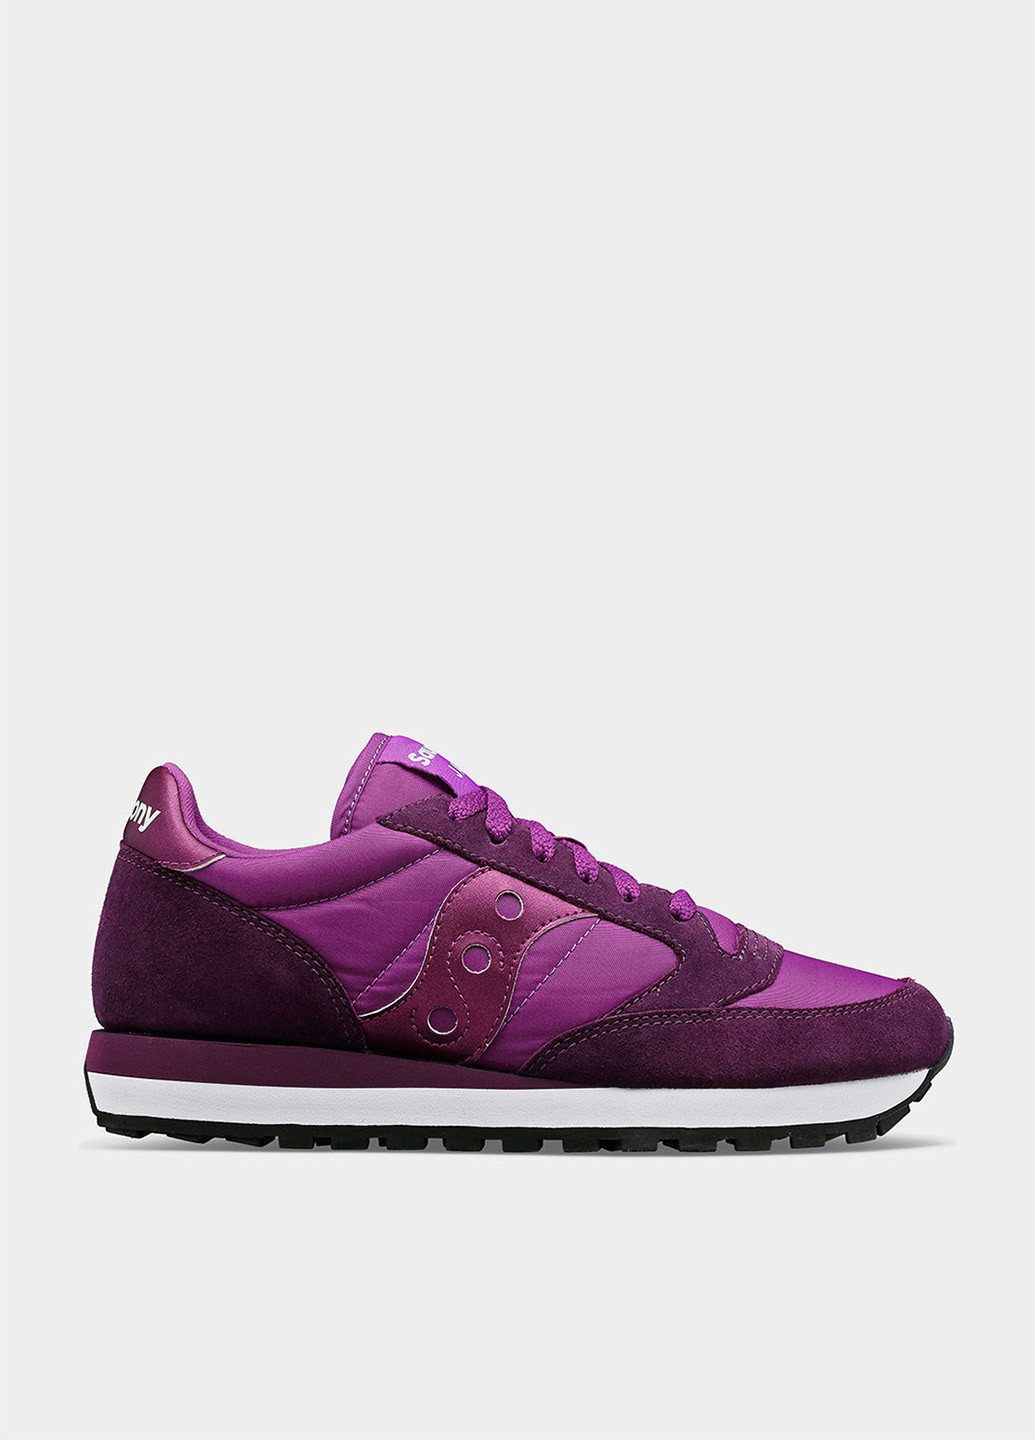 Пурпурные демисезонные кроссовки Saucony JAZZ ORIGINAL